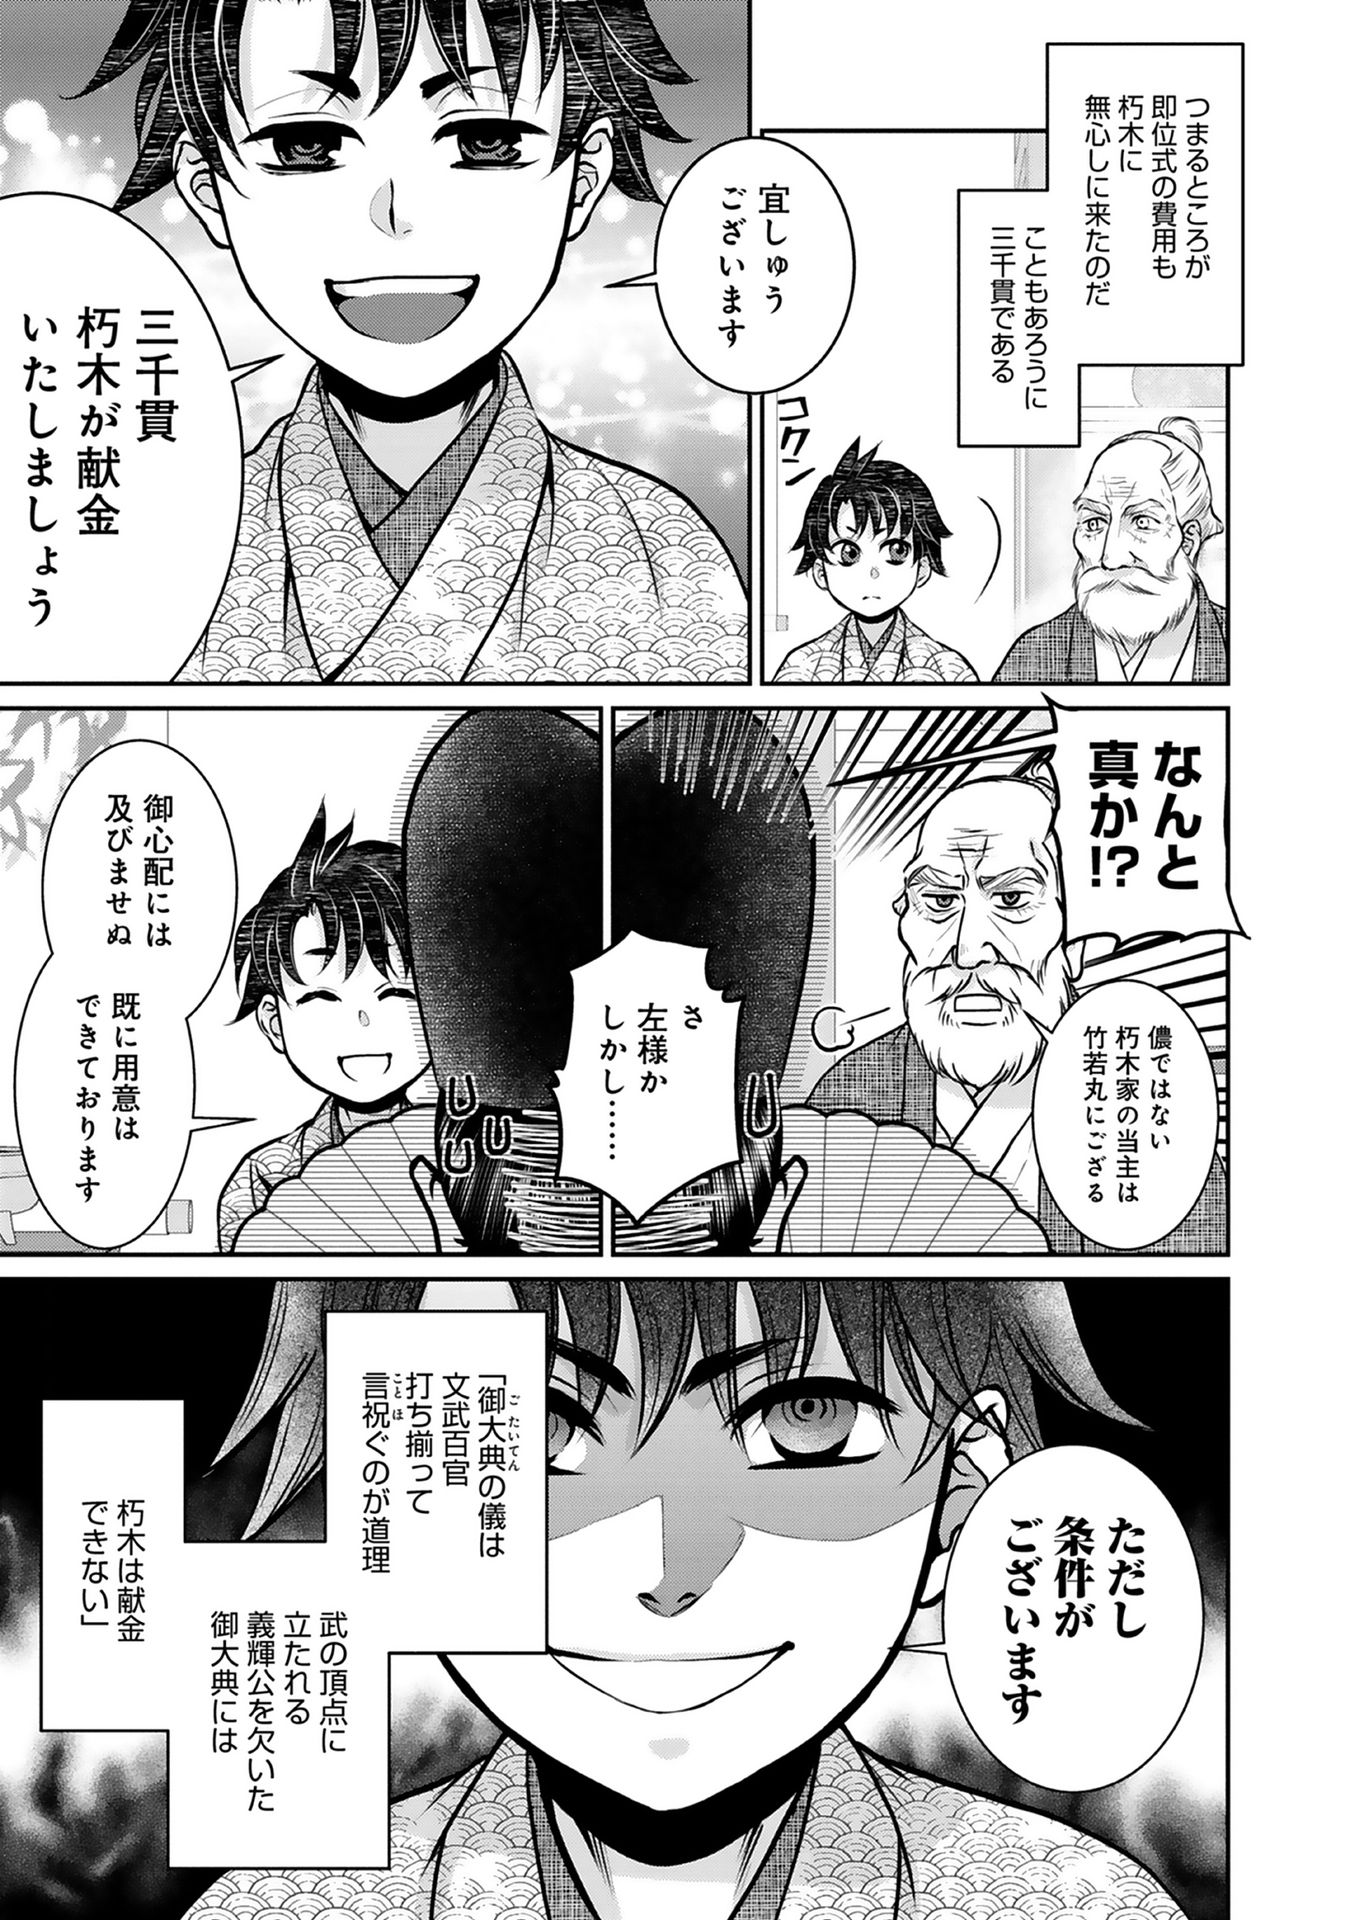 Afumi no Umi – Minamo ga Yureru Toki - Chapter 4 - Page 24